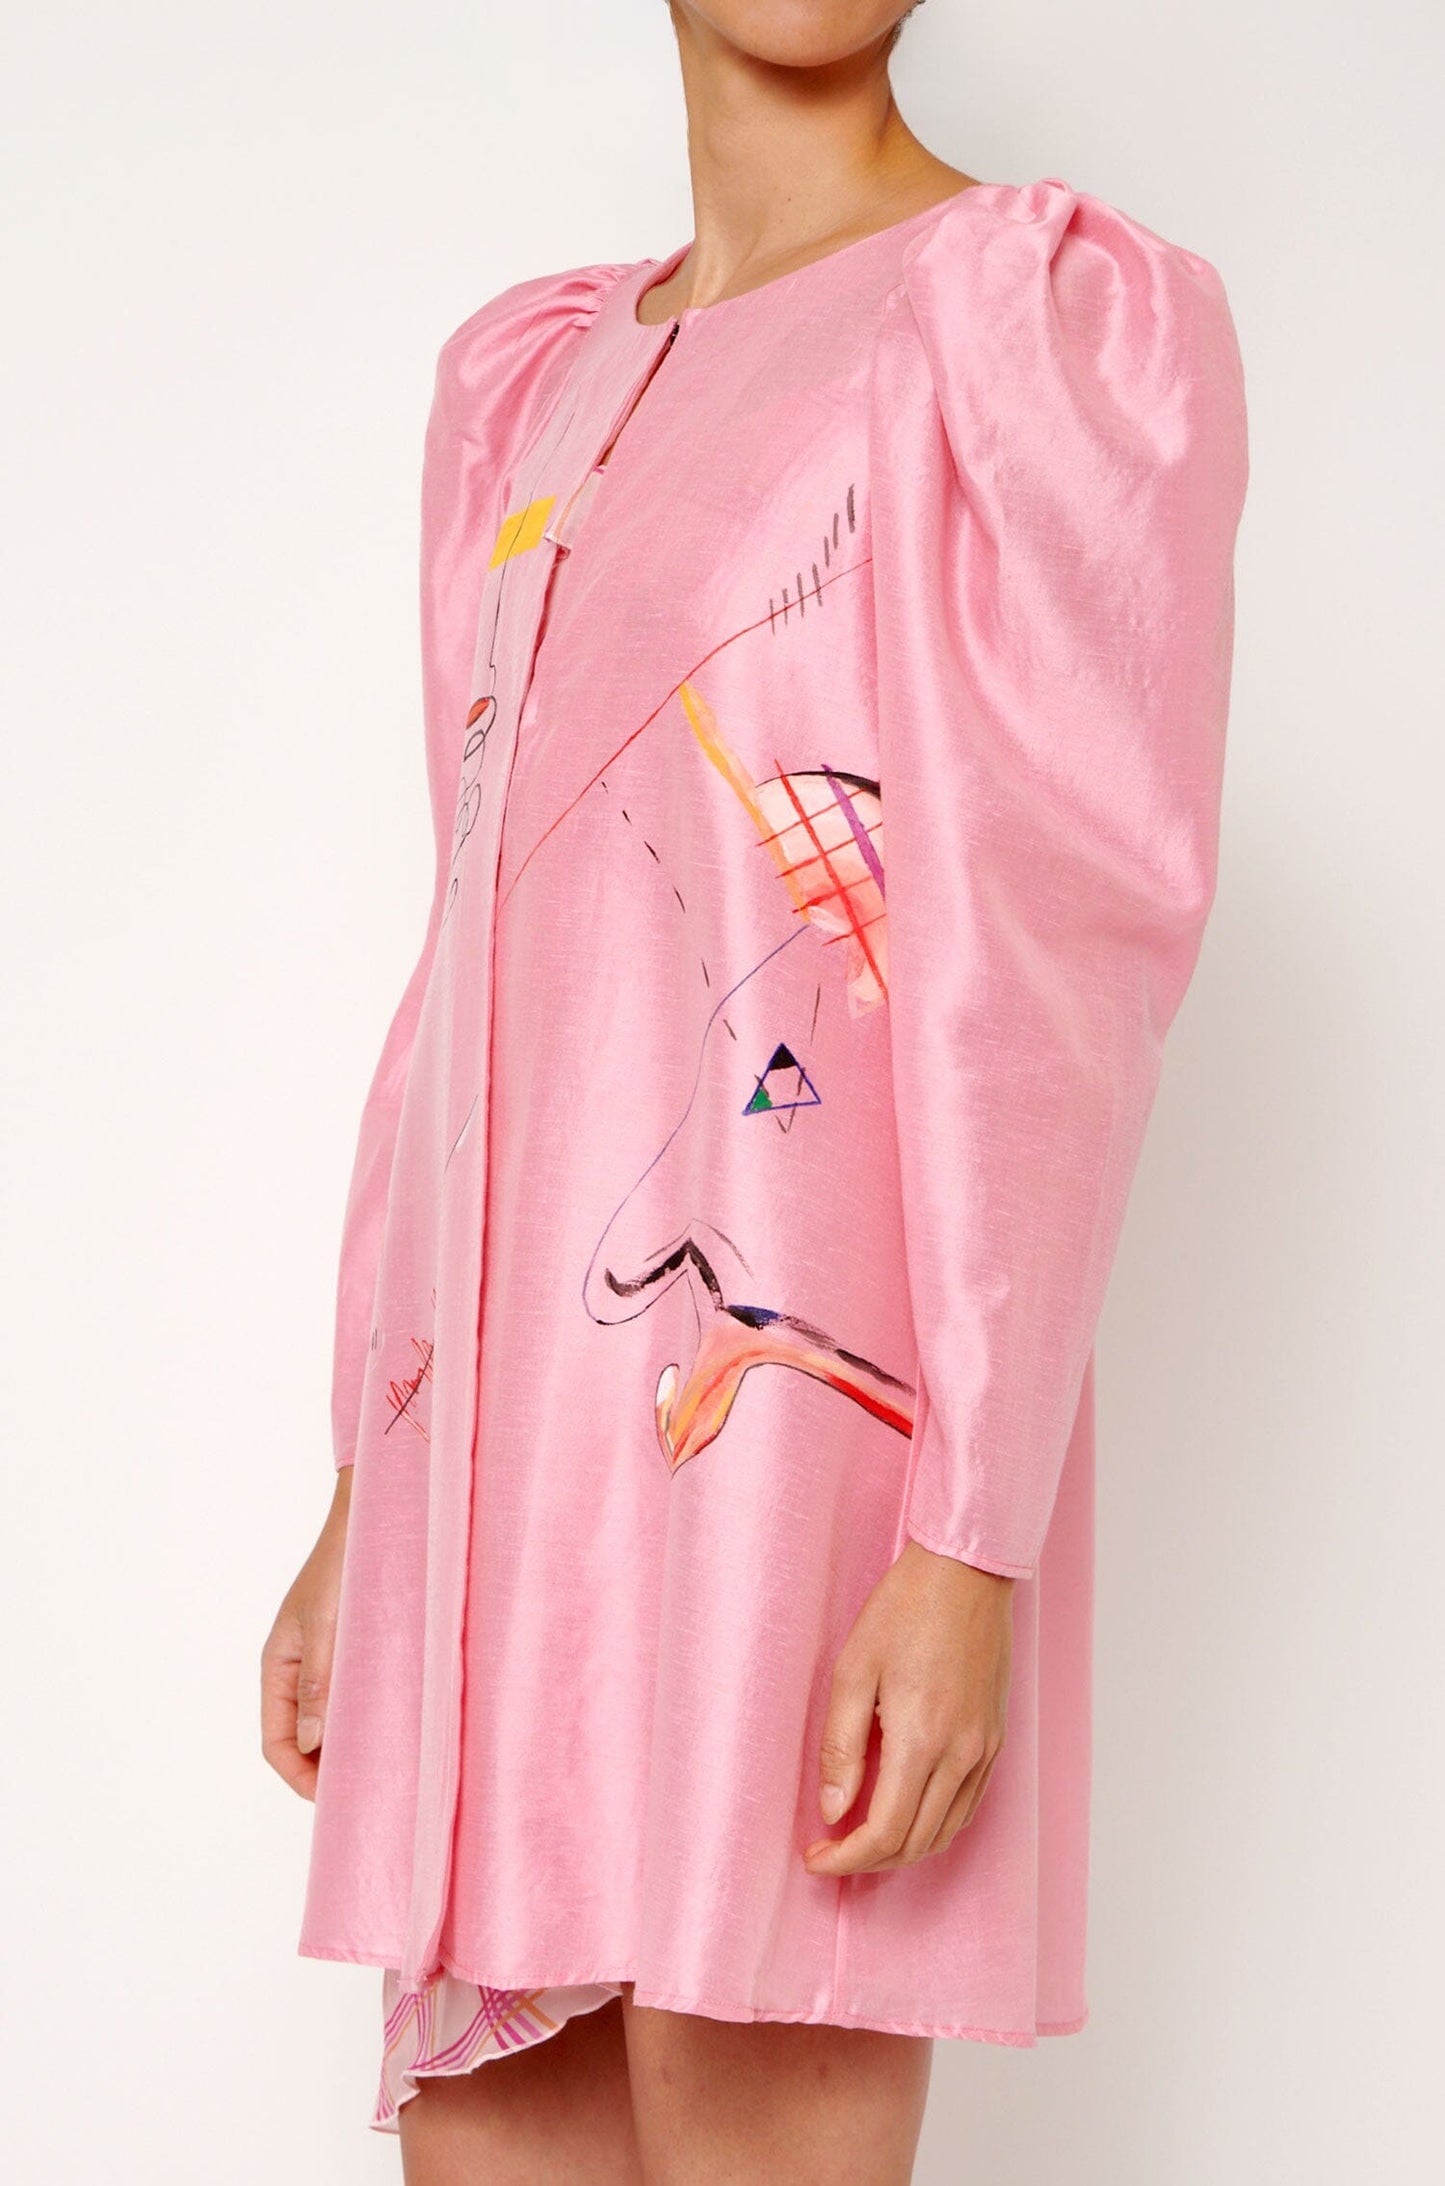 Blusón rosa pintado Shirts & blouses Luciana Estudio 